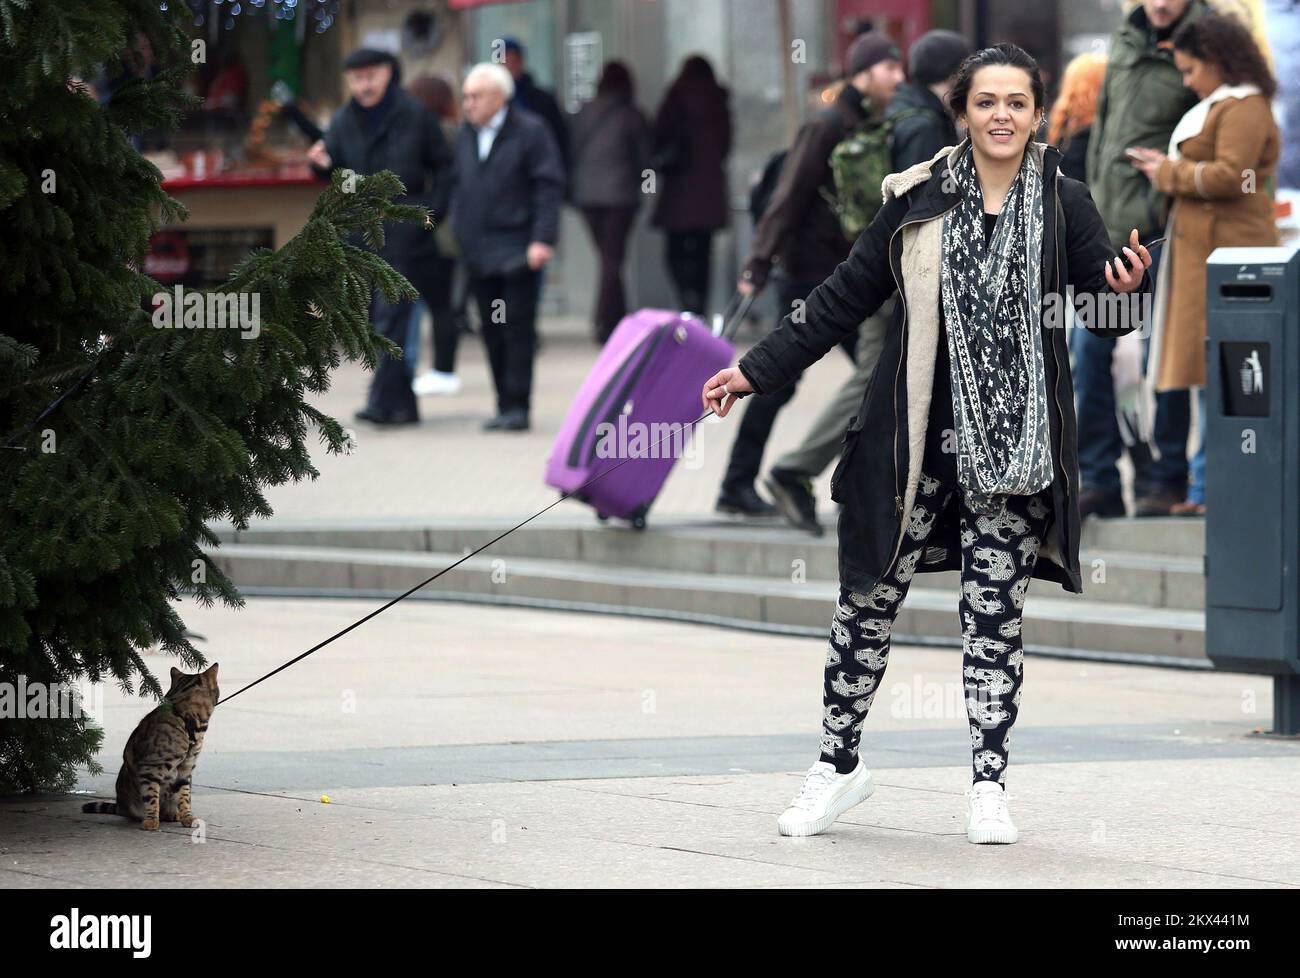 04.01.2018., Zagreb - la jeune fille sur la place Ban Josip Jelacic marchait son chat sur une laisse. Le chat n'a juste pas aimé la marche, donc le propriétaire a dû la prendre en armes photo: Sanjin Strukic/PIXSELL Banque D'Images